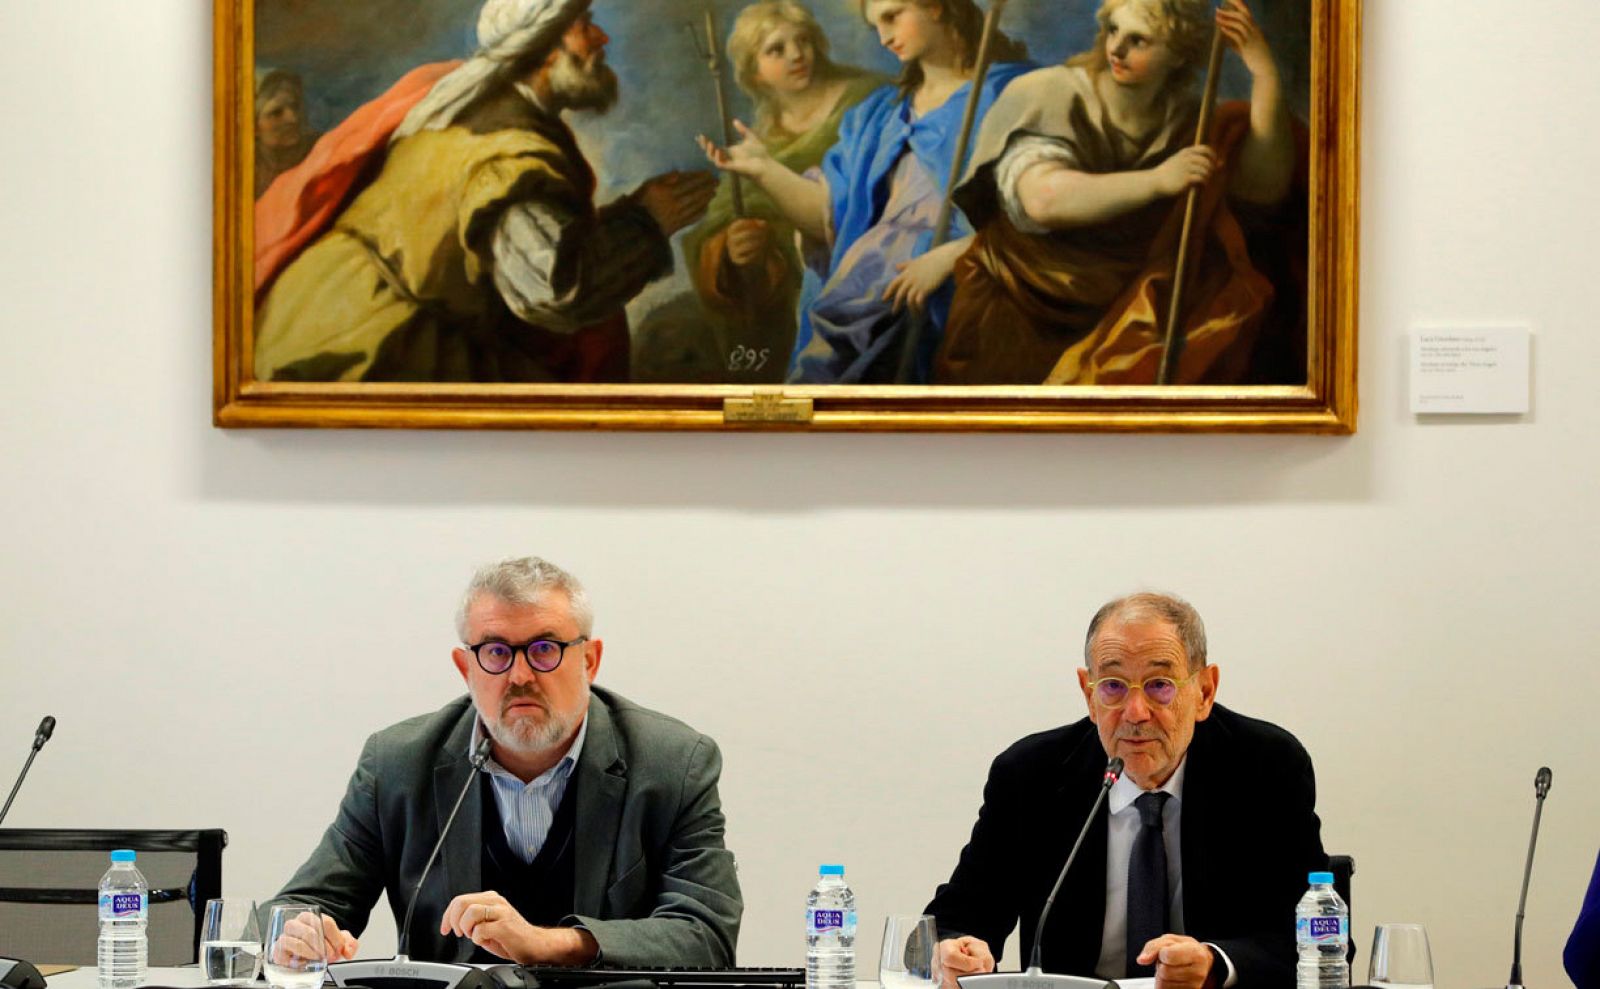 El director del Museo de Prado, Miguel Falomir (i), y el presidente del Real Patronato, Javier Solana (d), durante la presentación este jueves del balance de actividades desarrolladas por la celebración del Bicentenario (1819-2019) de la pinacoteca.